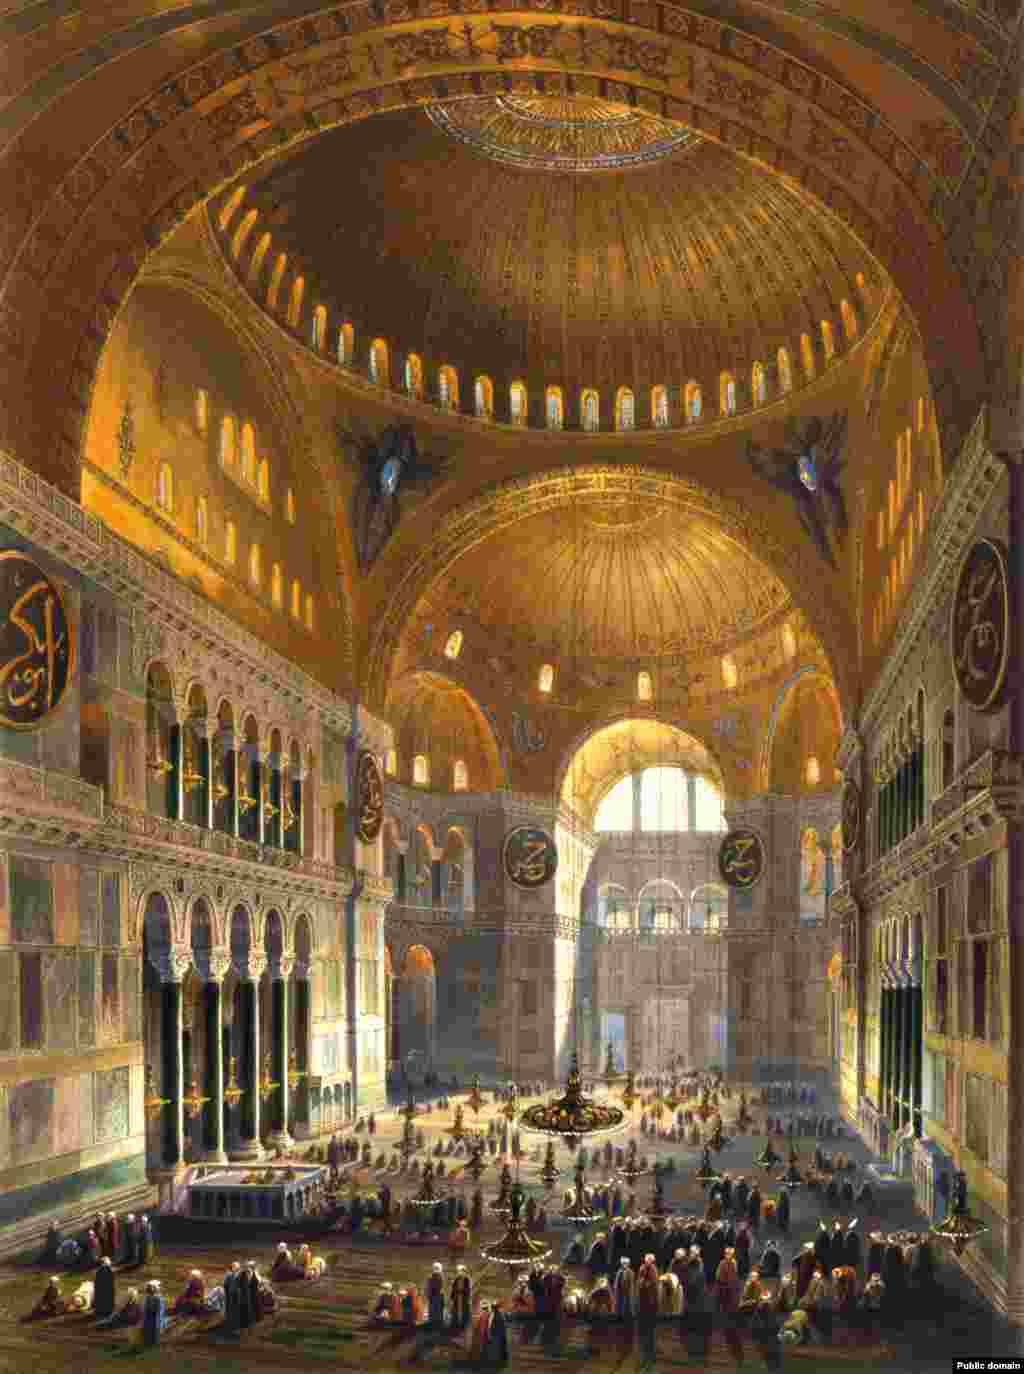 Ilustracija molitve muslimana u unutrašnjosti Aje Sofije iz vremena kada je bila džamija. &nbsp; Gotovo 500 godina, Aja Sofija bila je u funkciji džamije, a hrišćanske ikone u unutrašnjosti bile su prefarbane ili uništene.